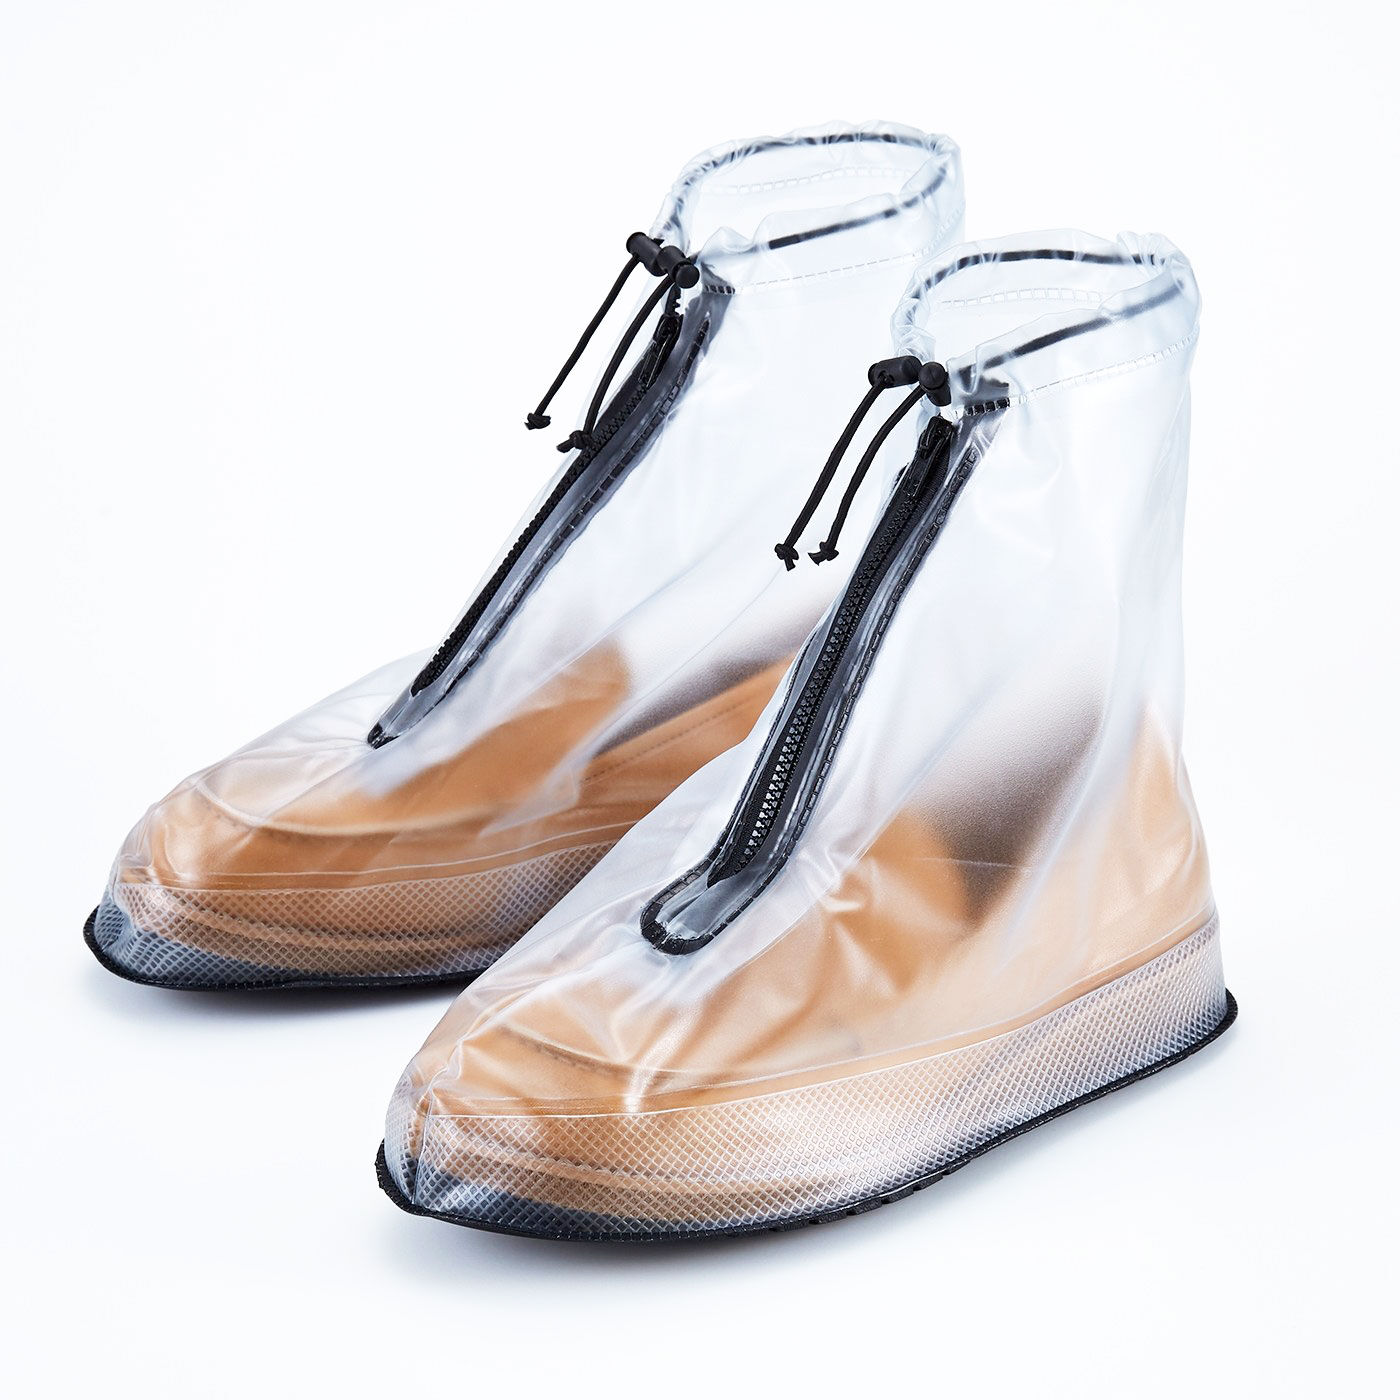 Real Stock|靴を雨や泥から守る　たたんで持ち歩けるシューズレインカバー〈透明〉|靴のデザインが透けて見えます。